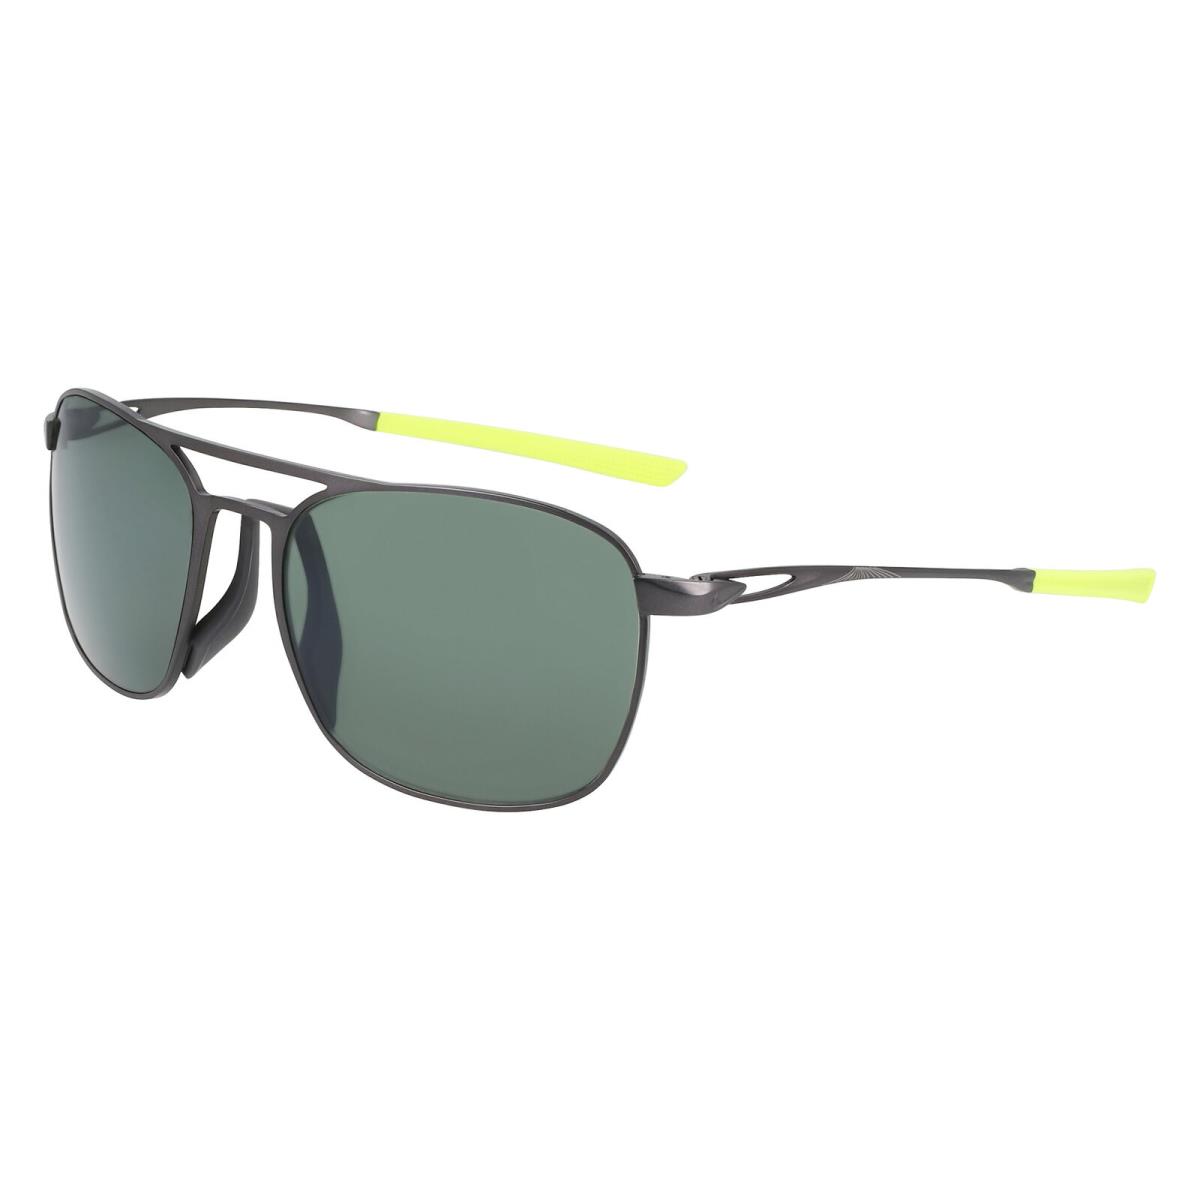 Nike Ace Driver P EV24010 Satin Gunmetal Polar Green 907 Sunglasses